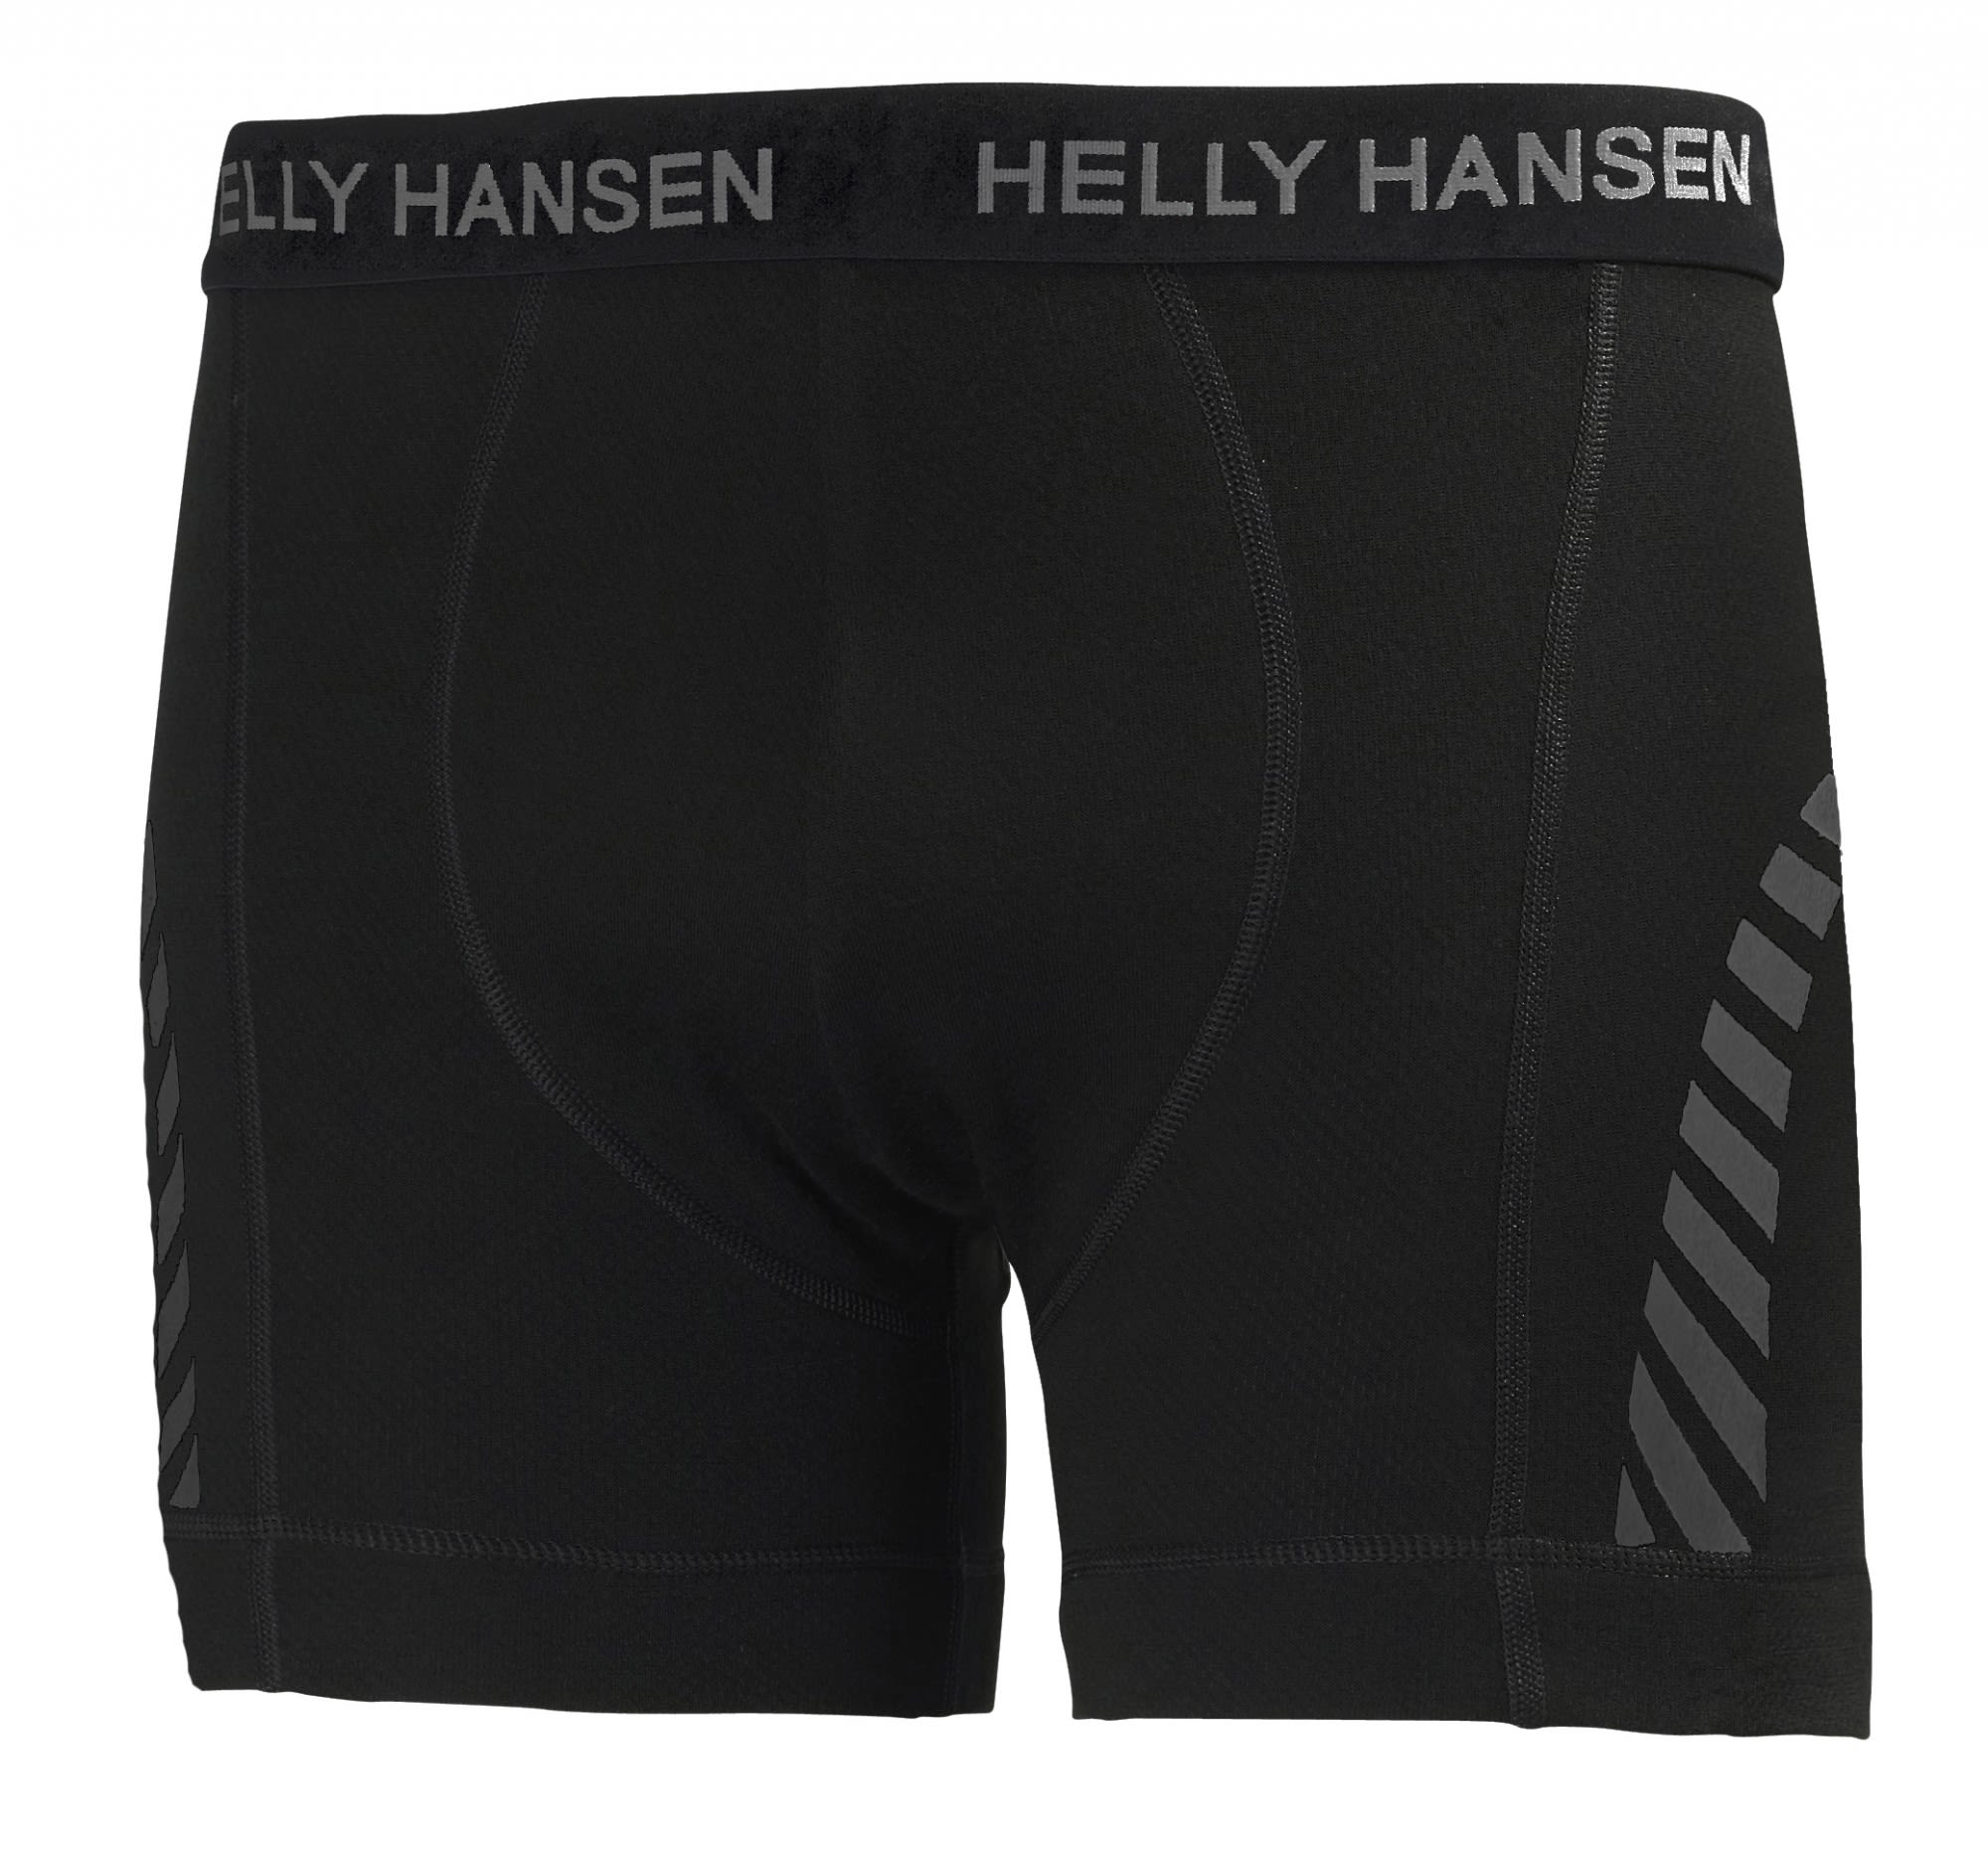 Helly Hansen Warme funktionelle Herren Merino Baselayer Boxershorts Black